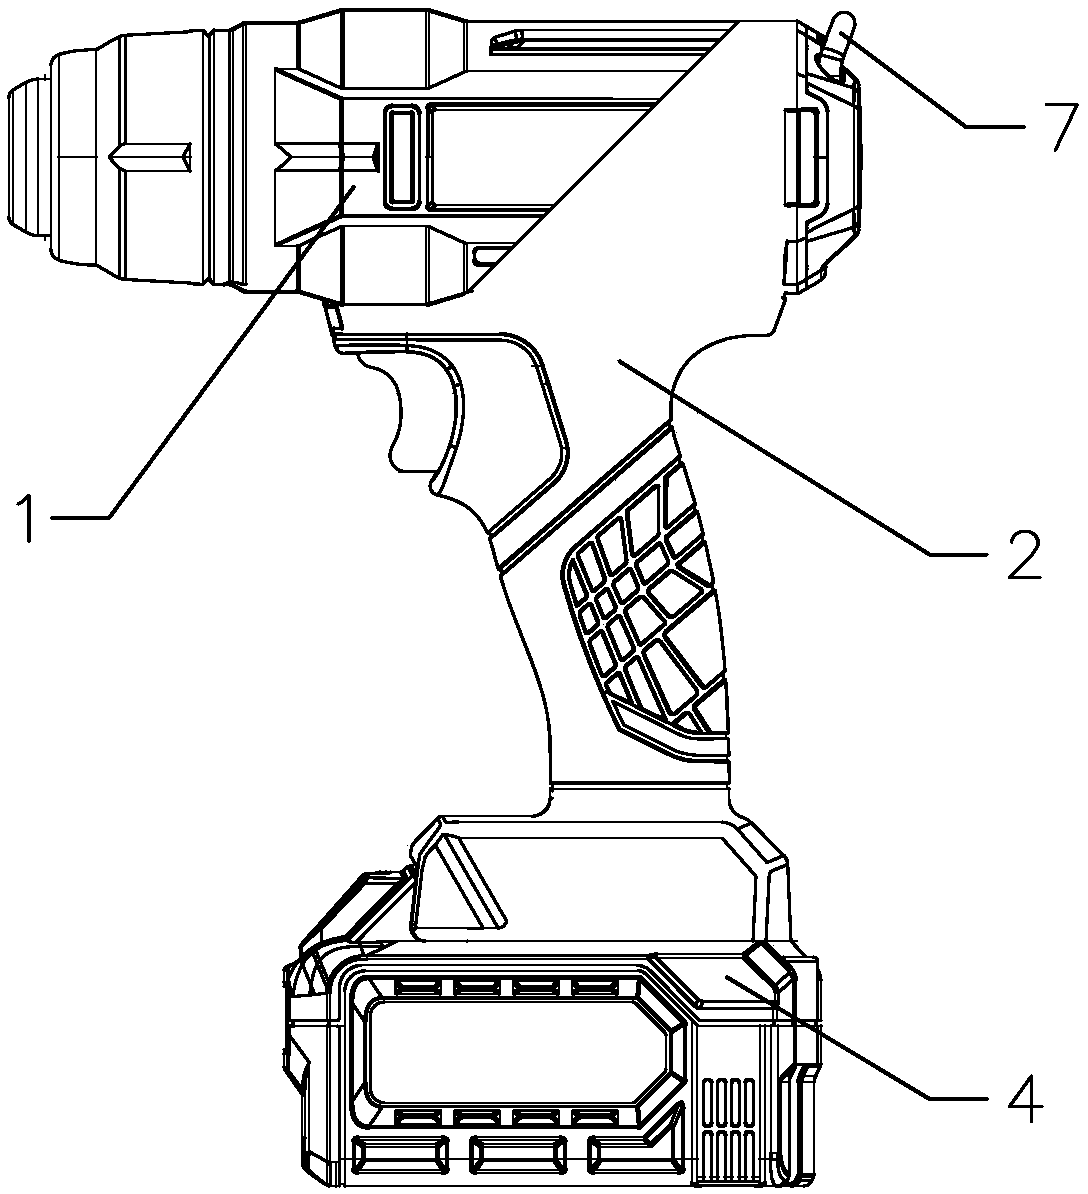 Multi-functional hot air gun